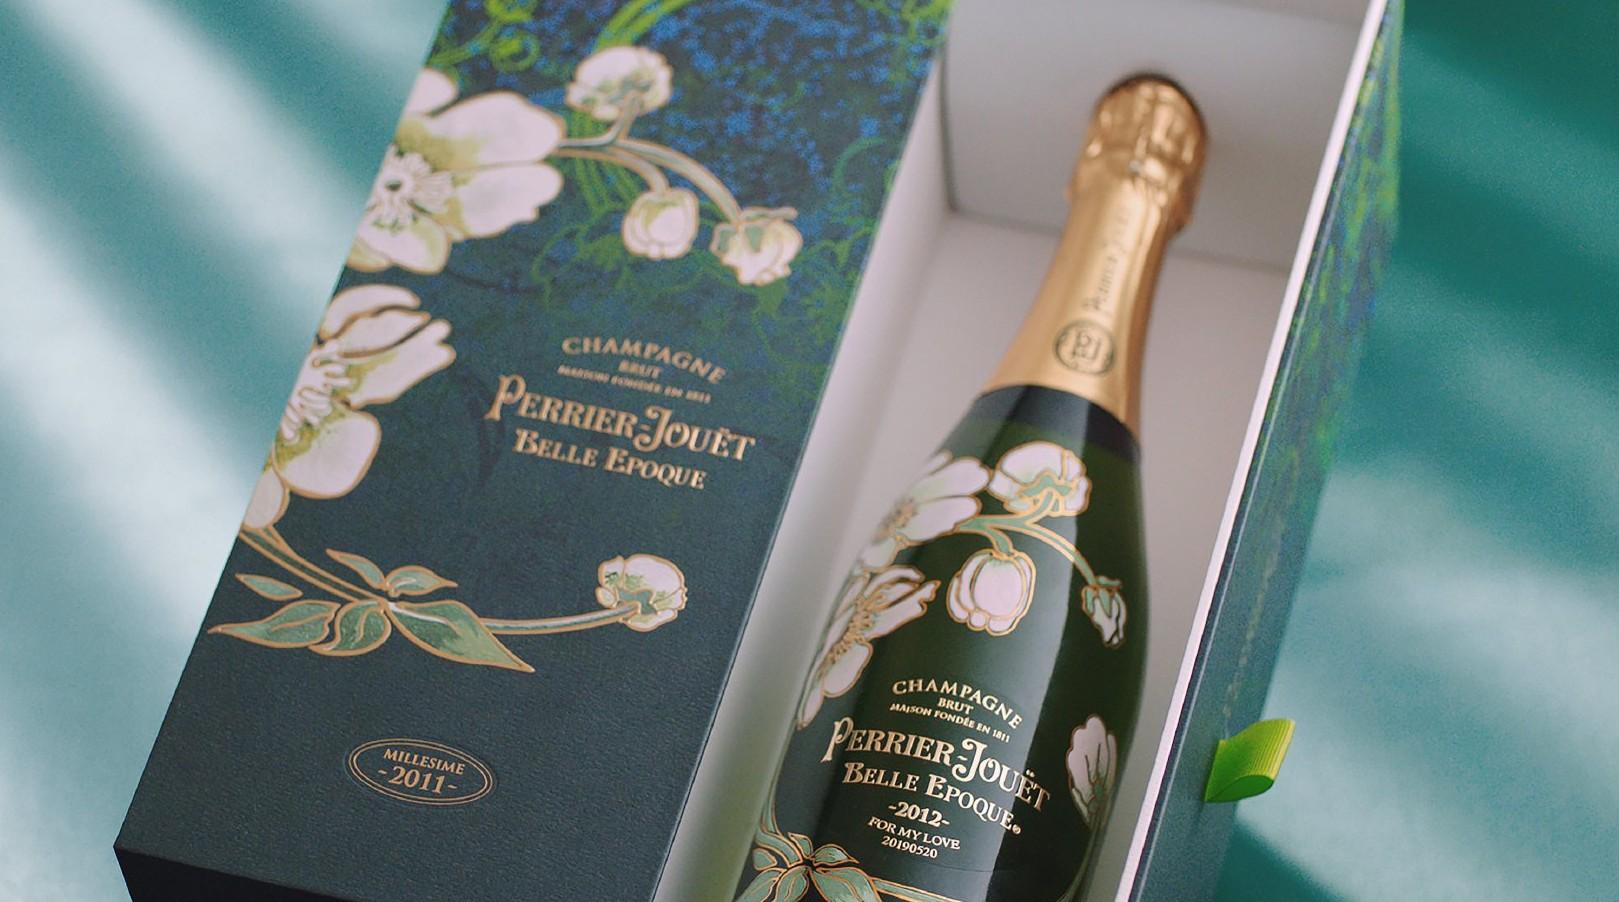 Perrier-Jouët 巴黎之花 - Belle Epoque年份香槟